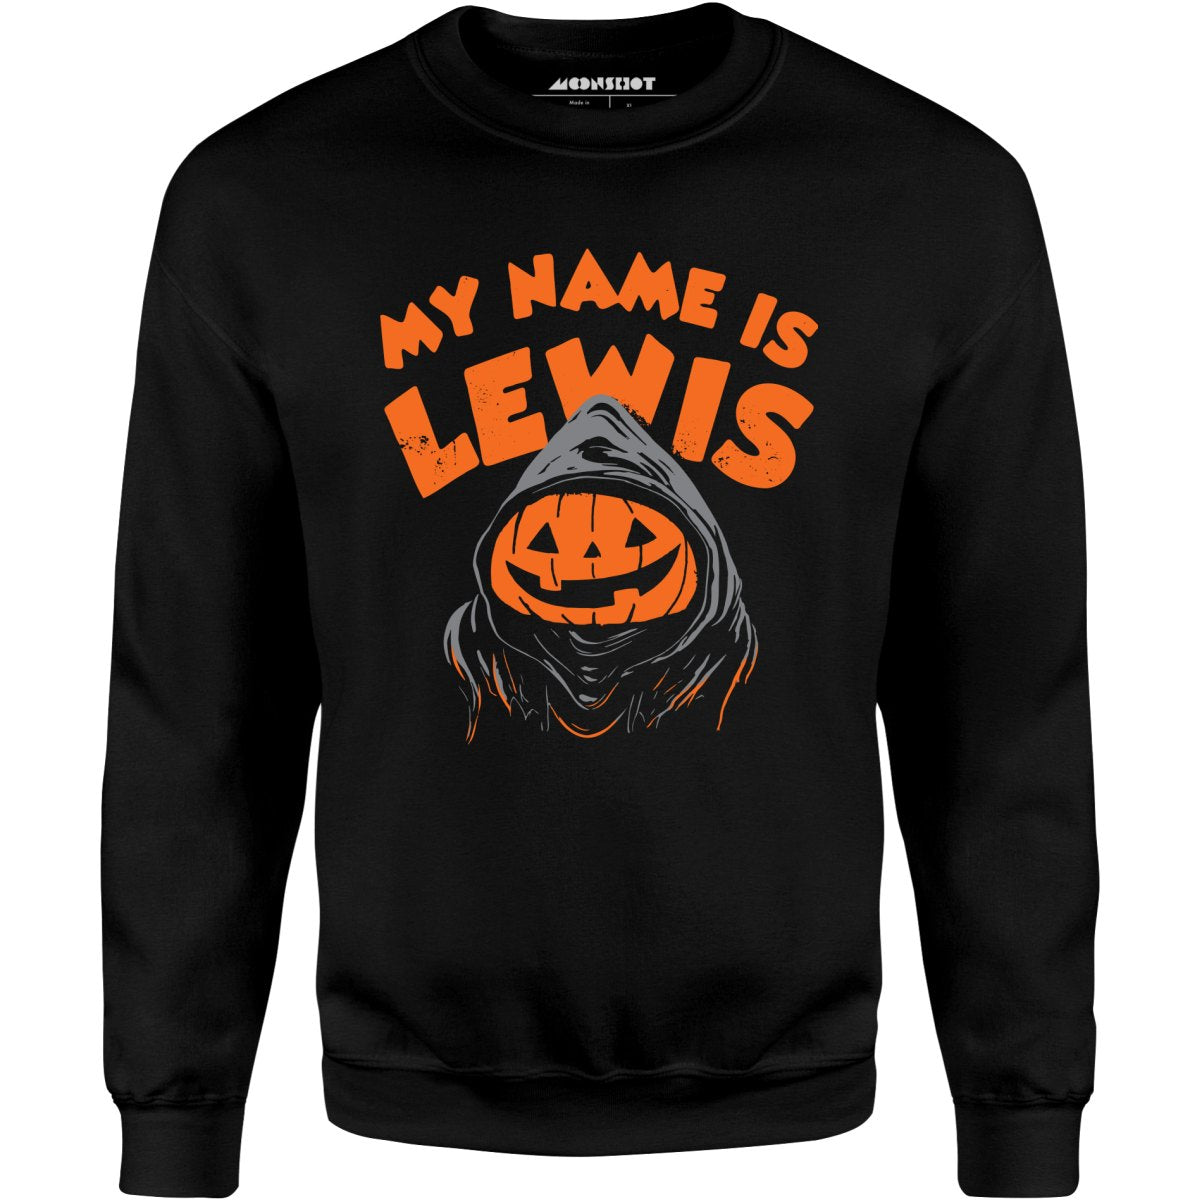 My Name is Lewis - Unisex Sweatshirt